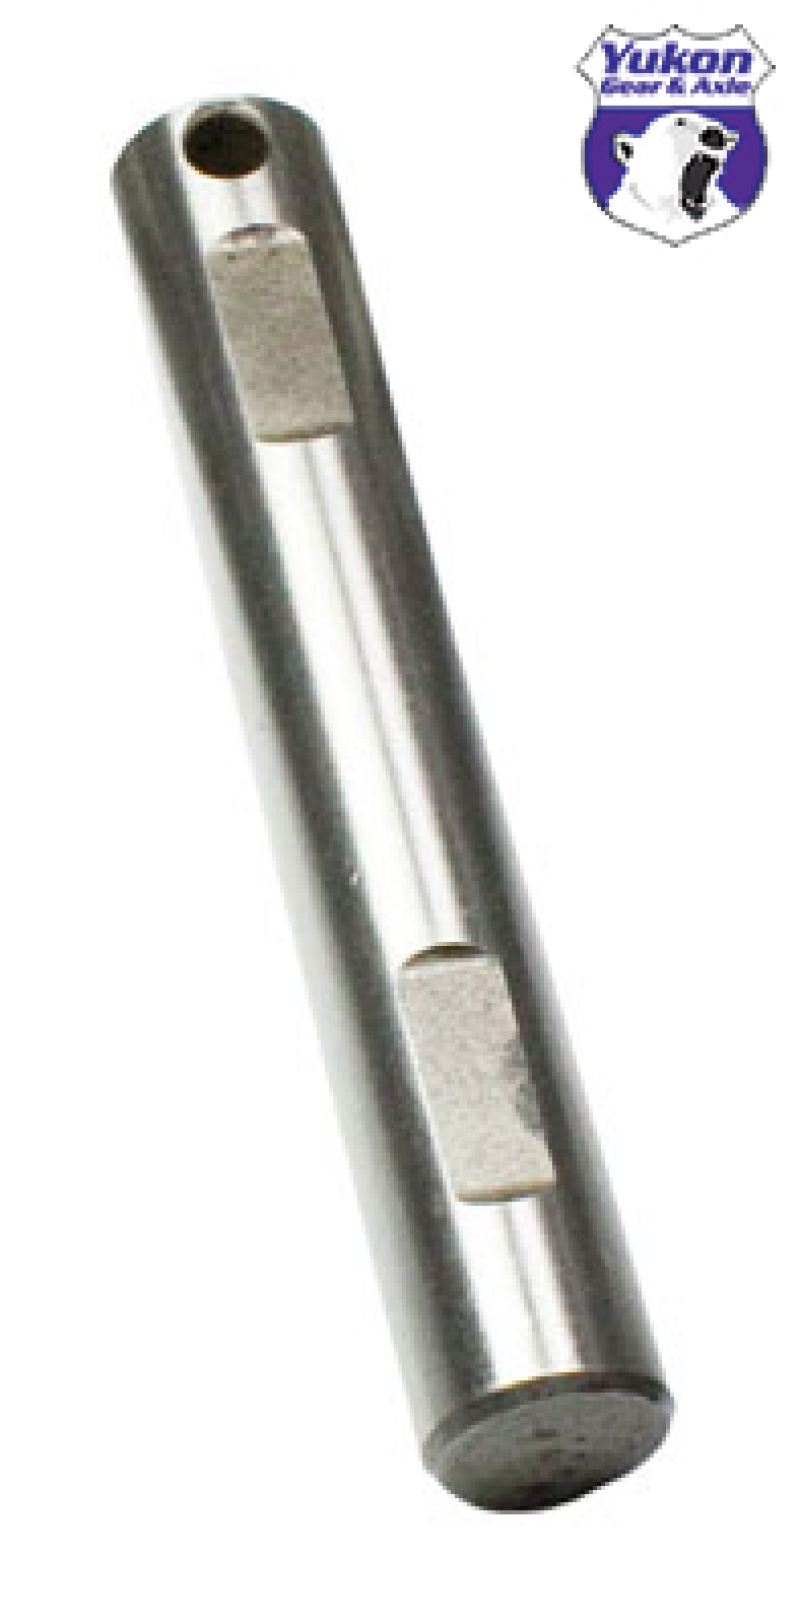 USA Standard Spartan Locker Replacement Cross Pin For Dana 30 - SL XP-D30